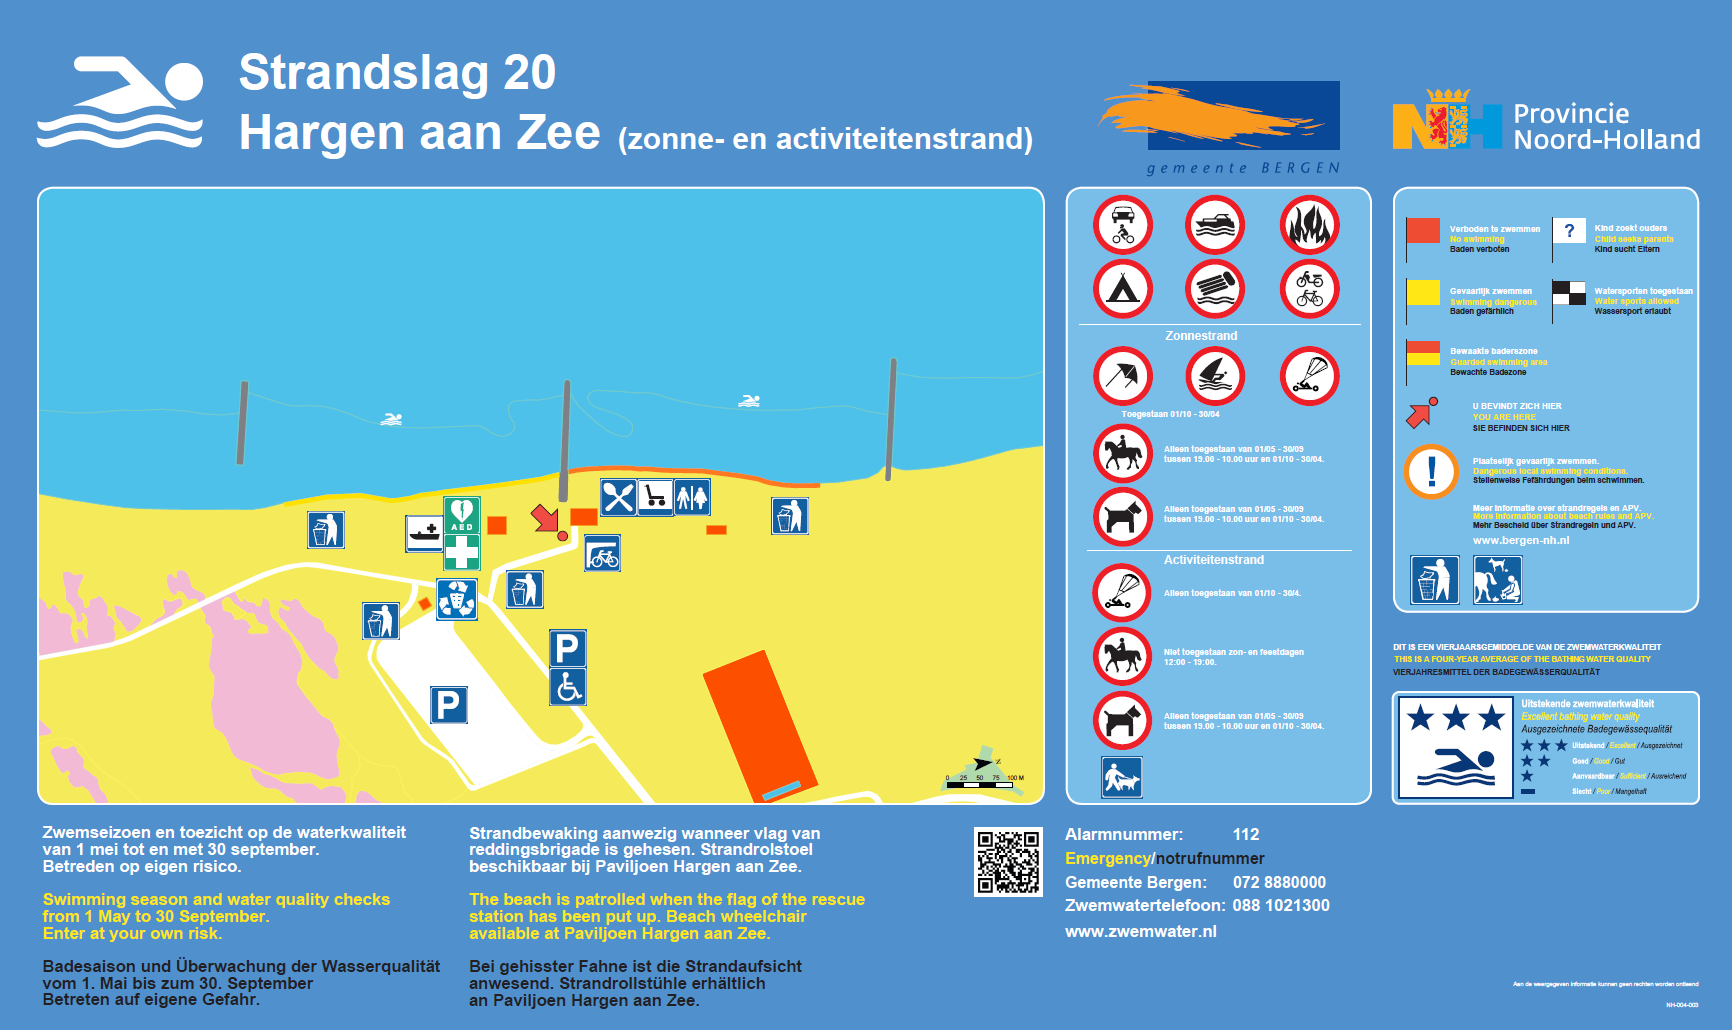 Het informatiebord bij zwemlocatie Hargen aan Zee, Strandslag 20